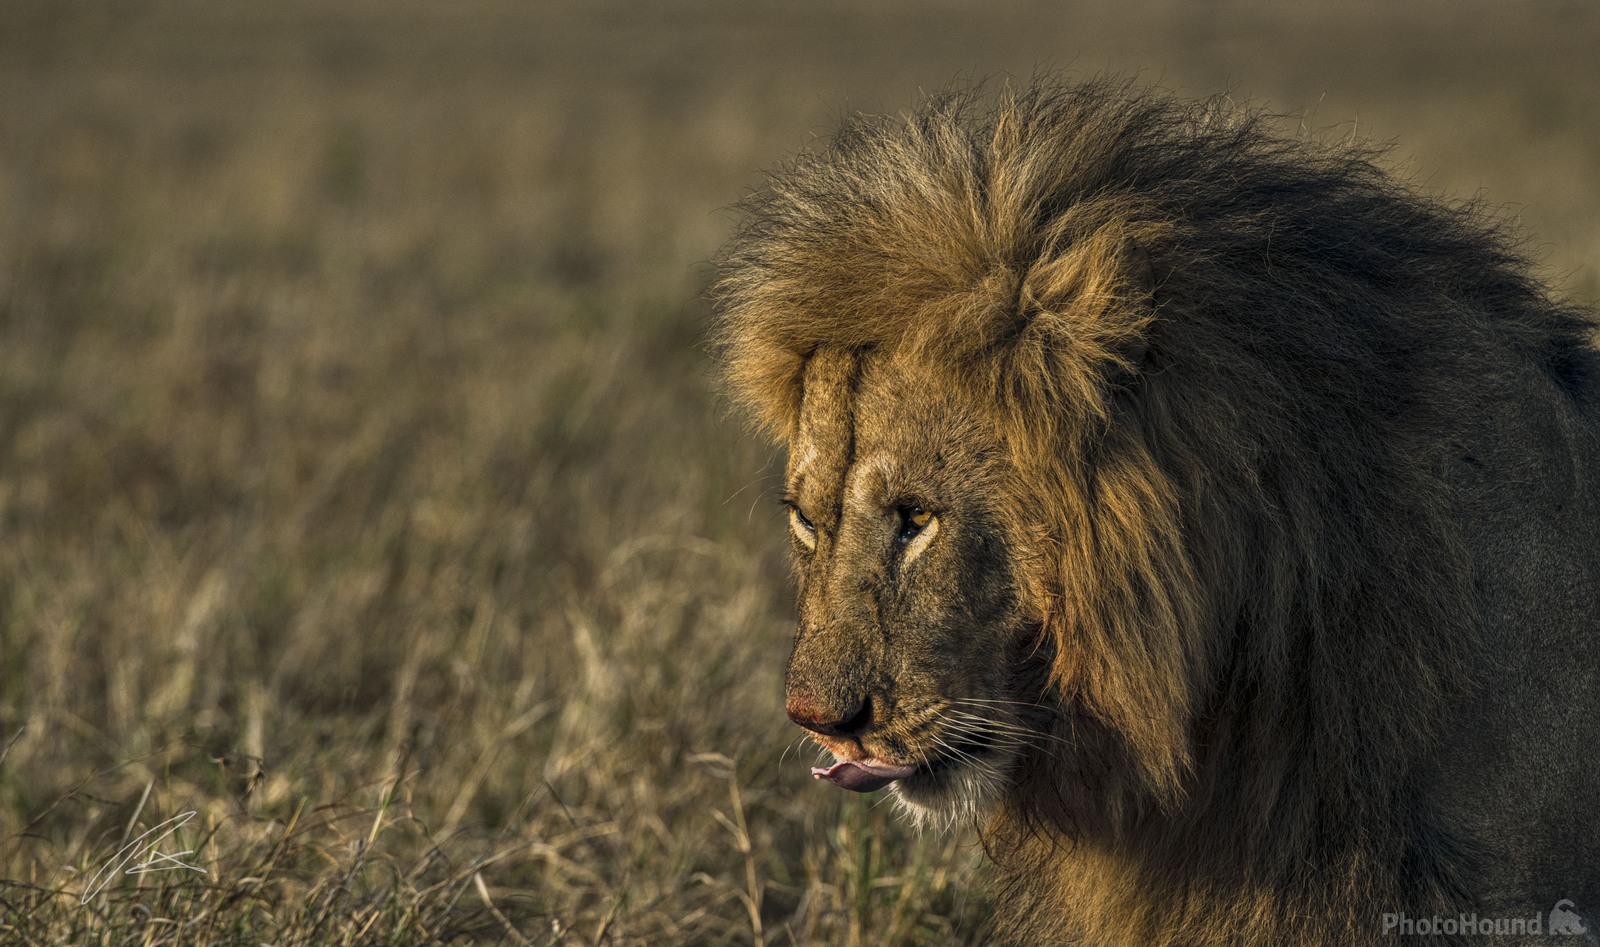 Image of Maasai Mara Game Reserve by Patrick Hulley